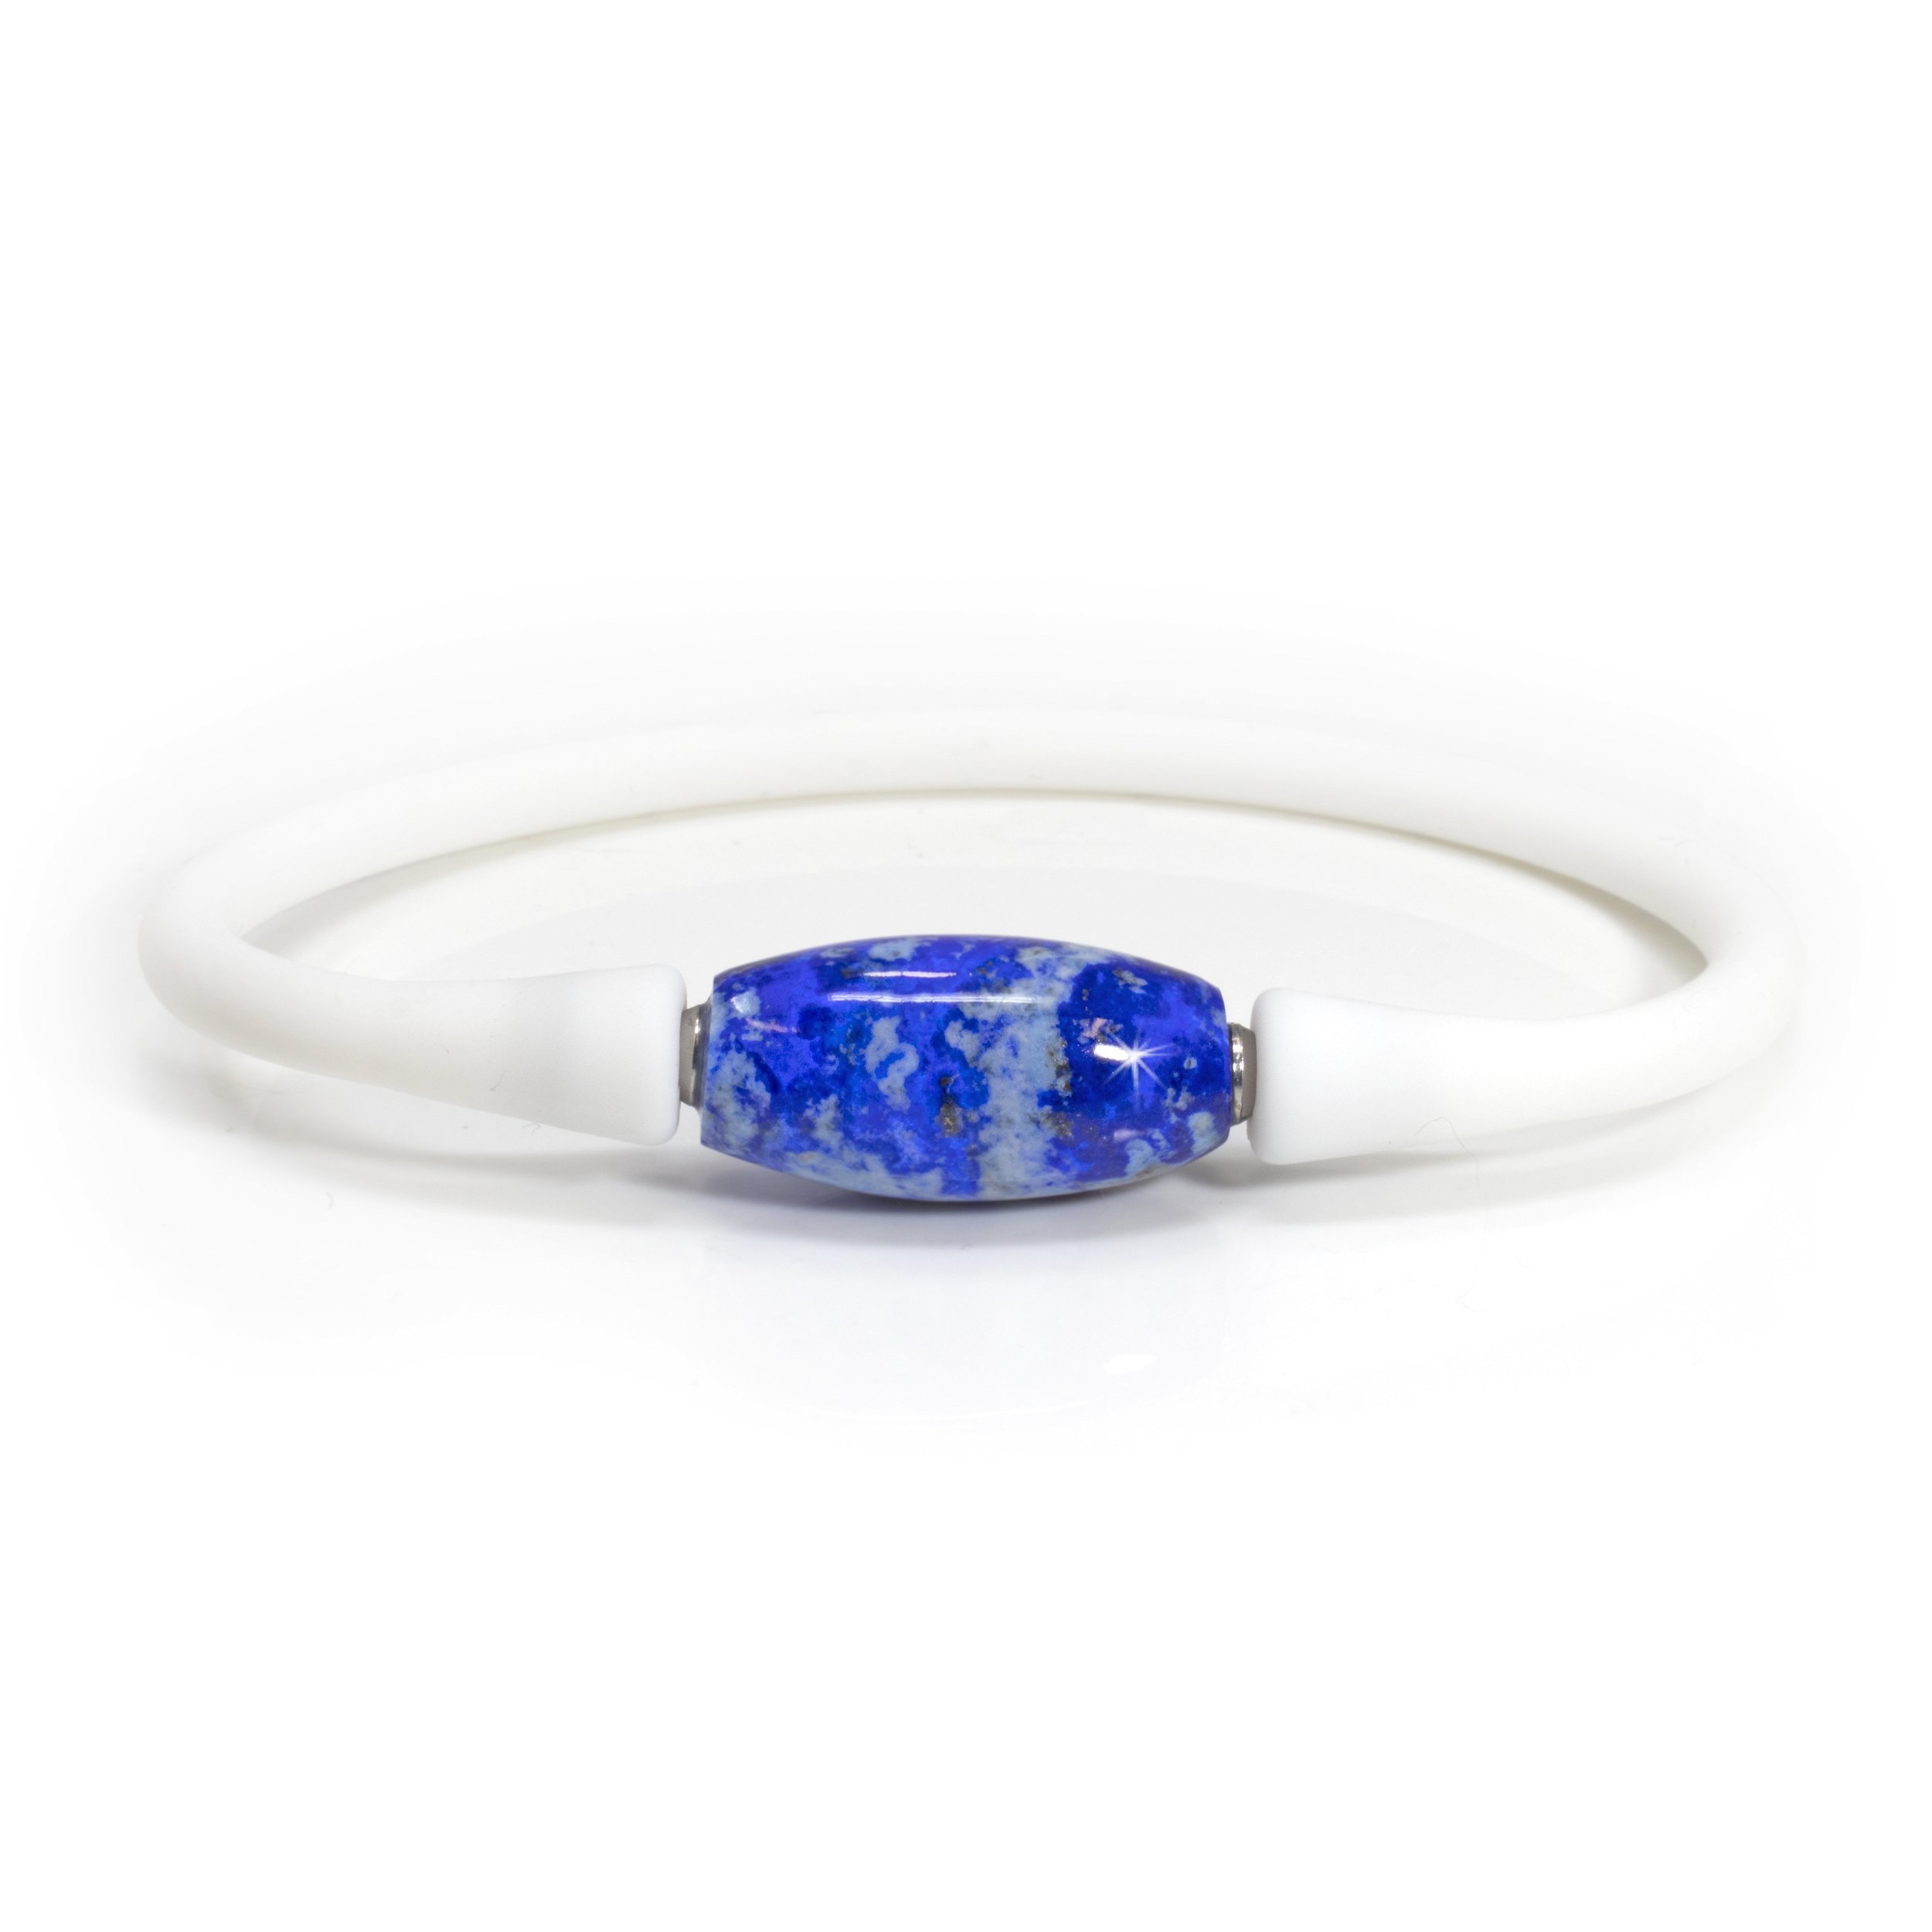 Lapis Lazuli Bangle Bracelet - Barrel Bead Set On White Silicone Band